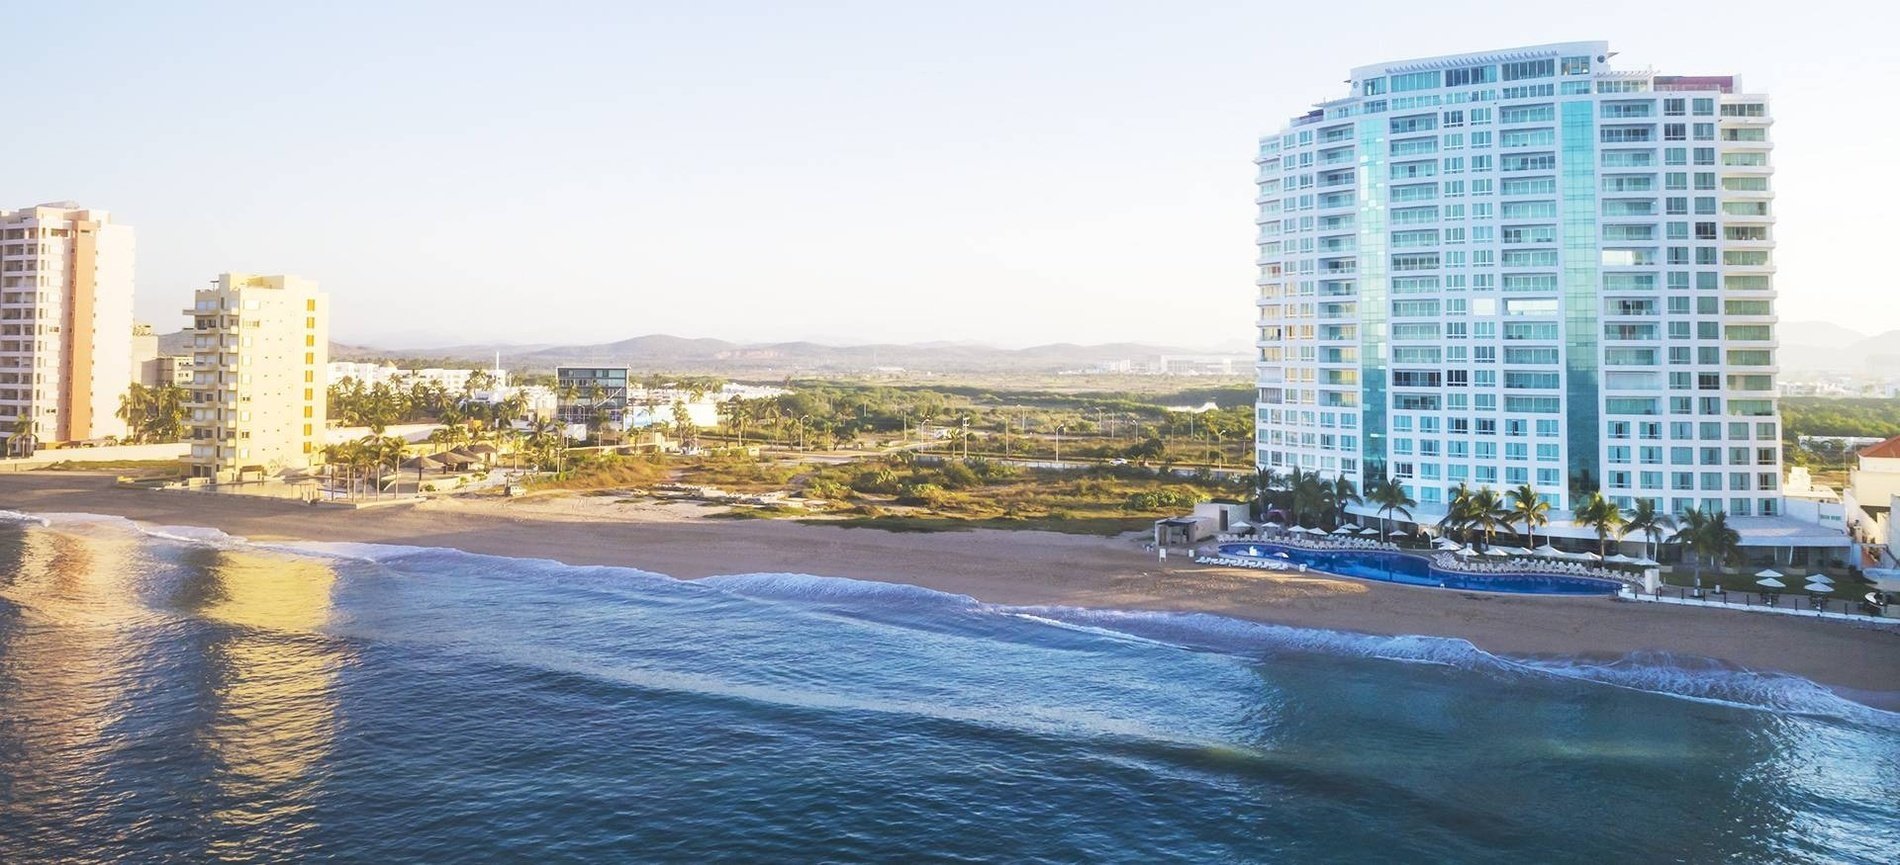 Vista panorâmica do hotel Park Royal Beach Mazatlan no México